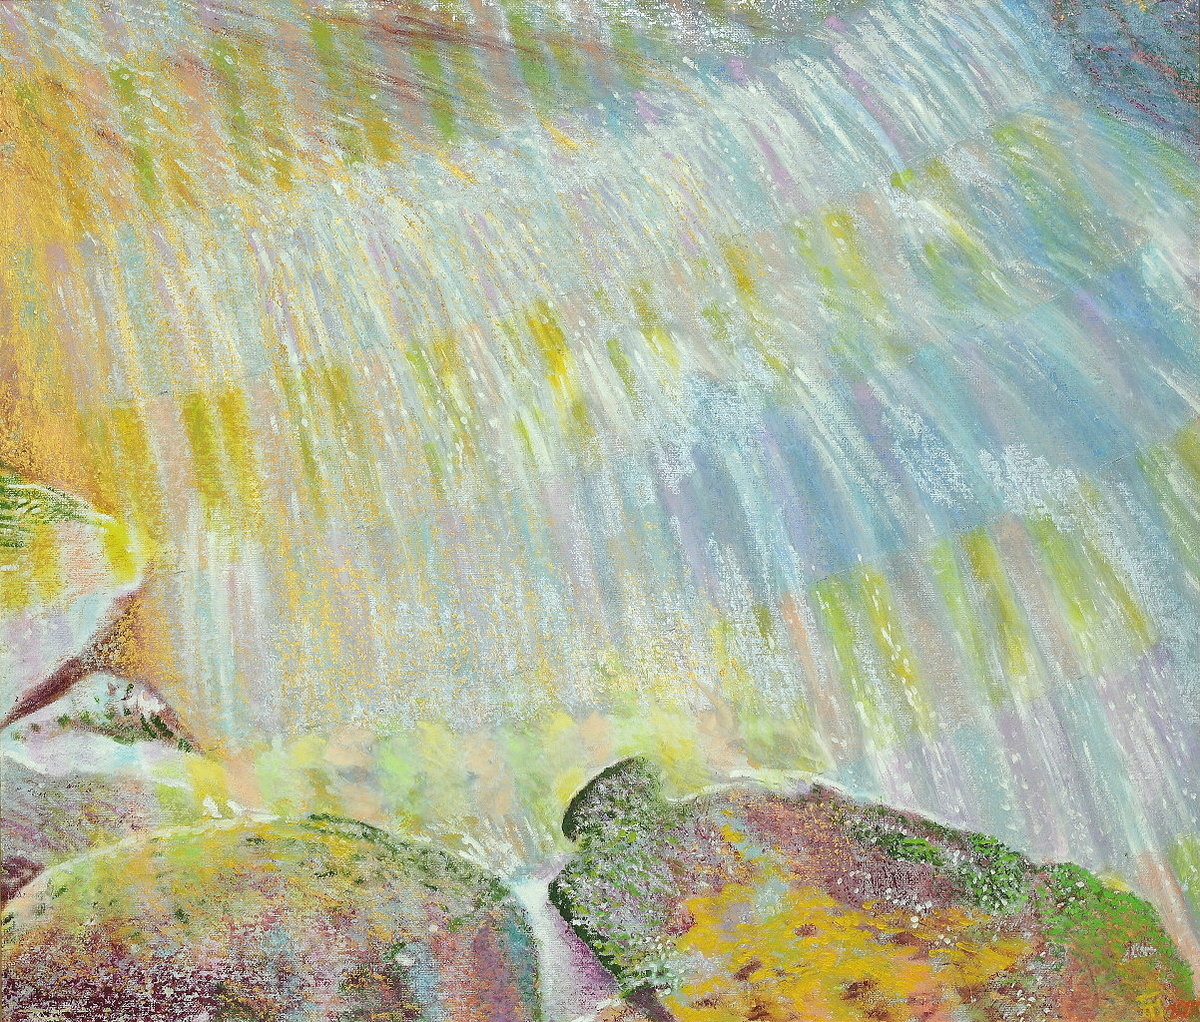  Bodefälle II , Gemälde: Öl auf Buchbinderkarton, 2011, 60 x 70 cm; an den Oberen Wasserfällen der Bode bei Braunlage